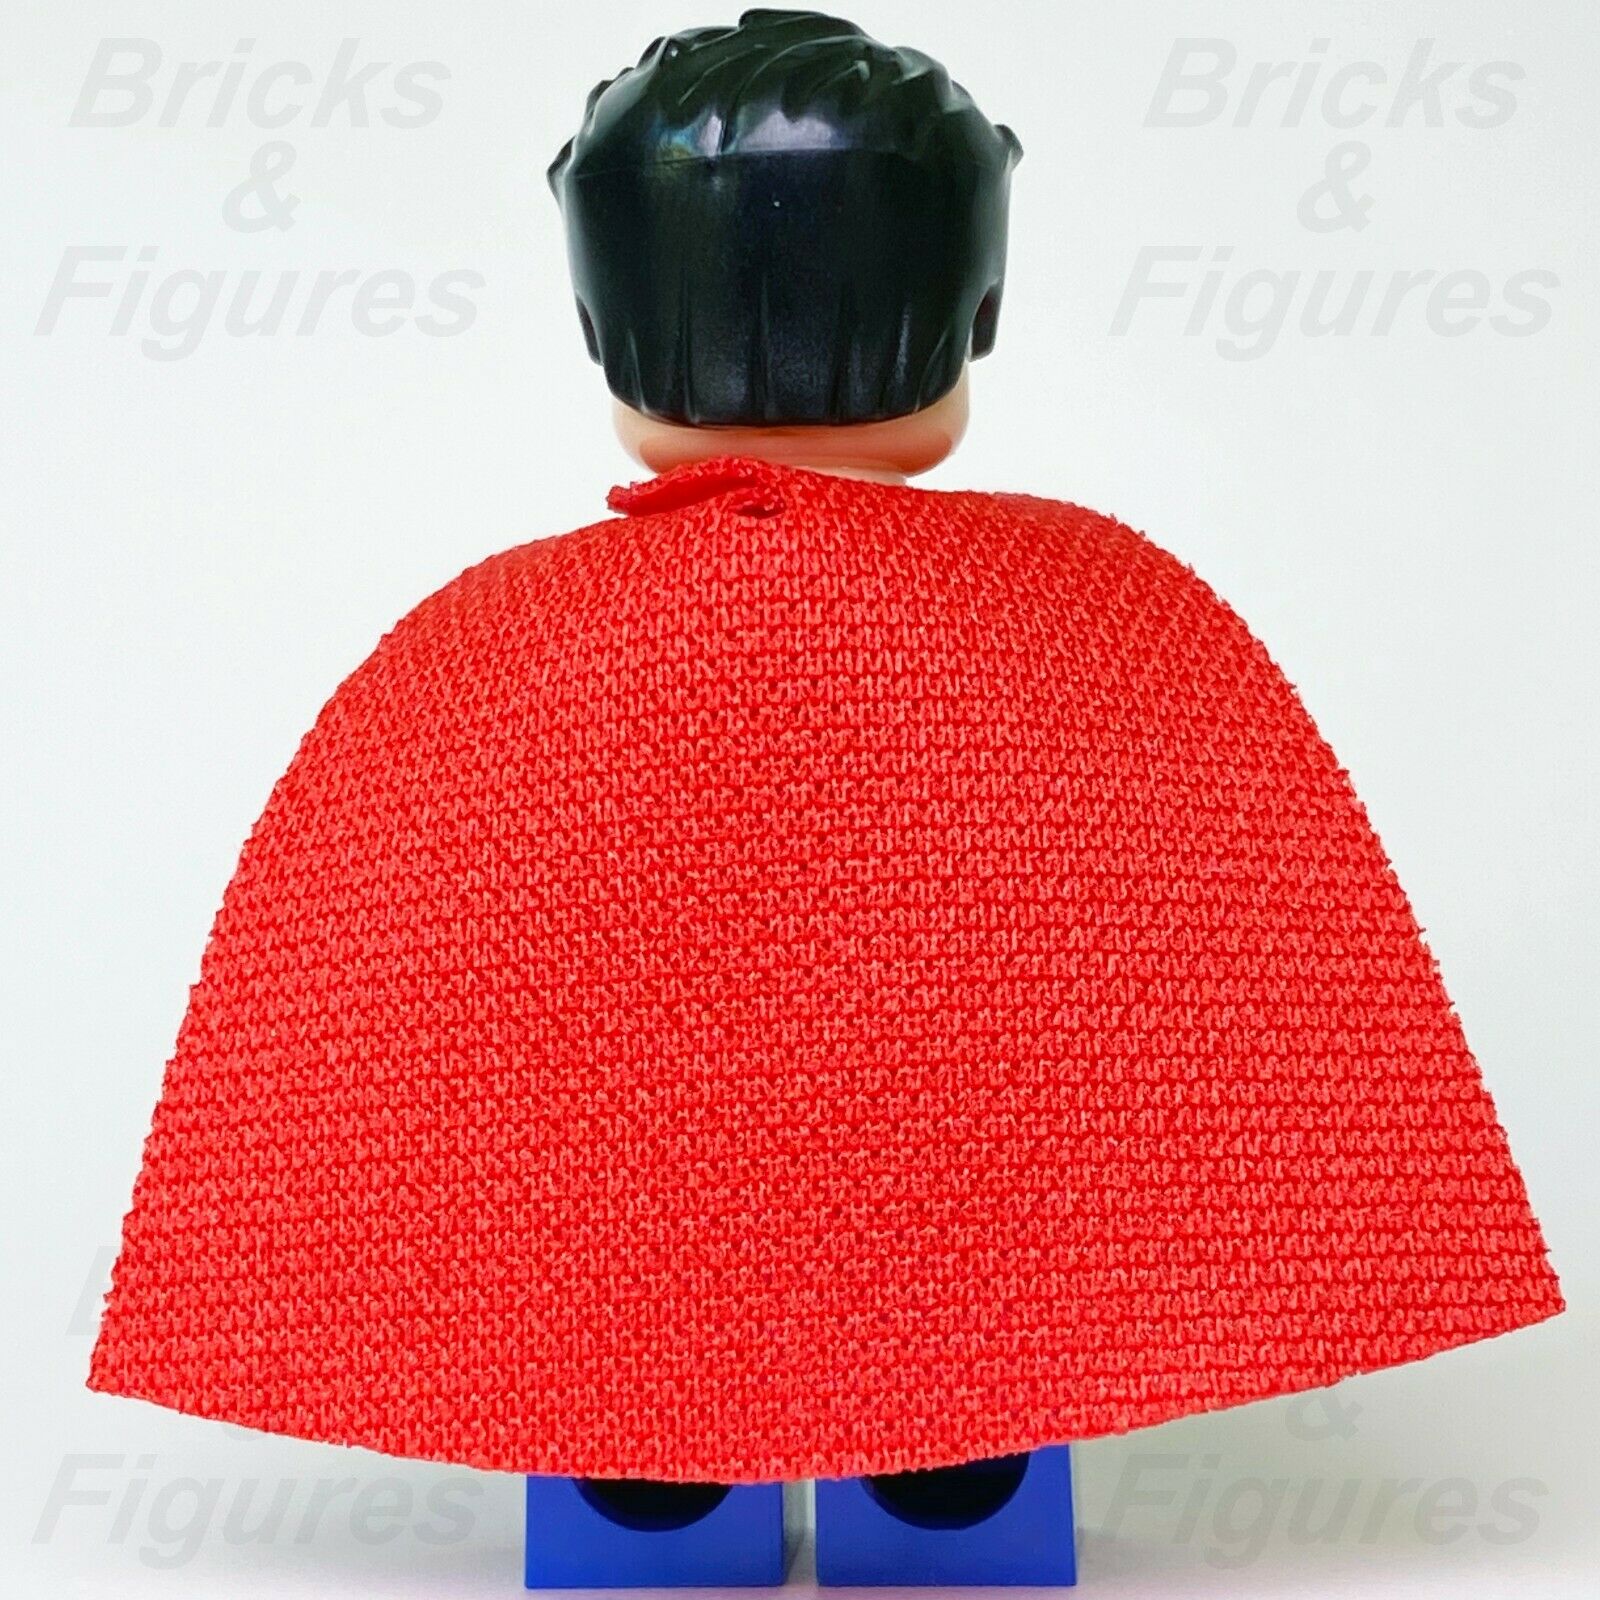 DC Super Heroes LEGO Superman Clark Kent Justice League Blue Suit Minifig 76096 - Bricks & Figures